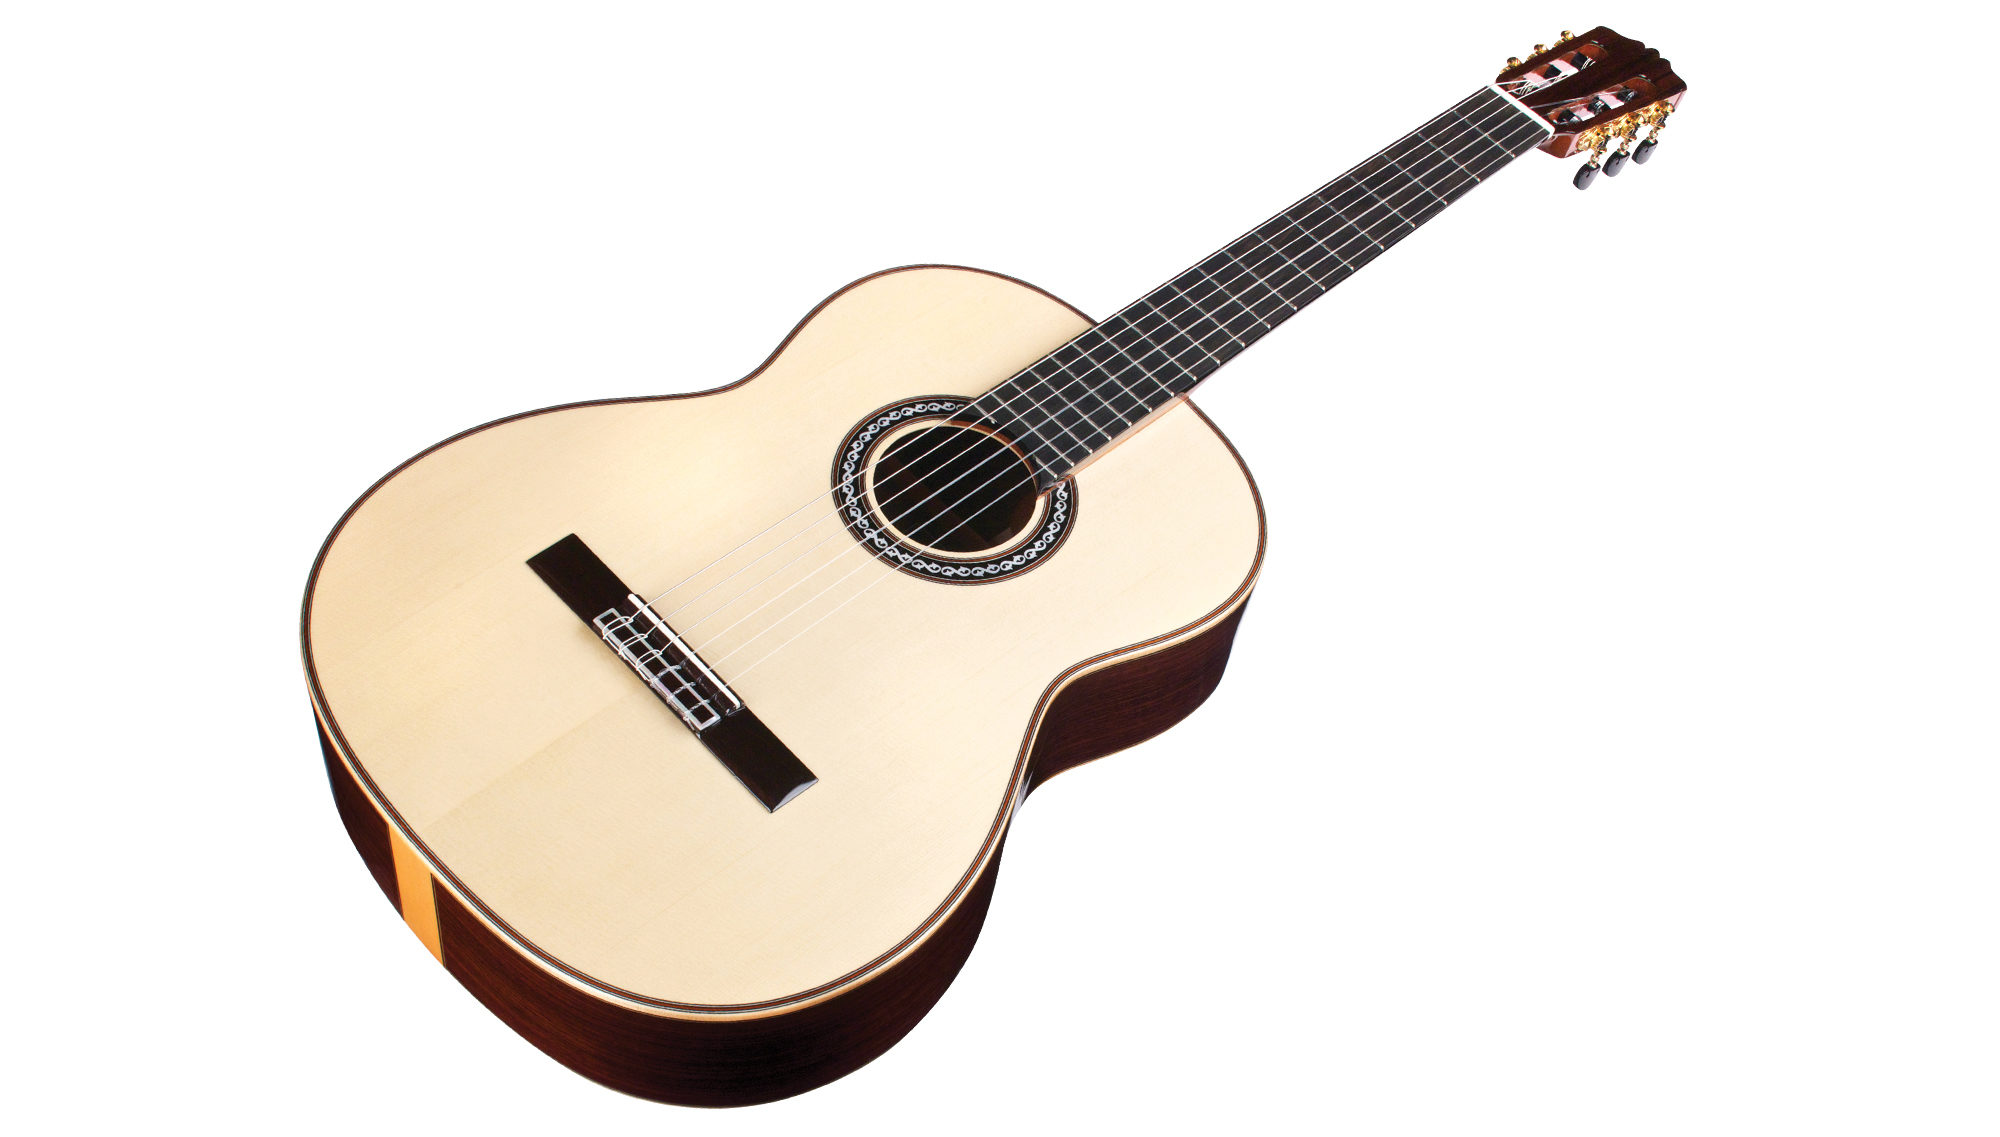 Cordoba C12 Sp Luthier 4/4 Epicea Palissandre Eb - Naturel - Classical guitar 4/4 size - Variation 2